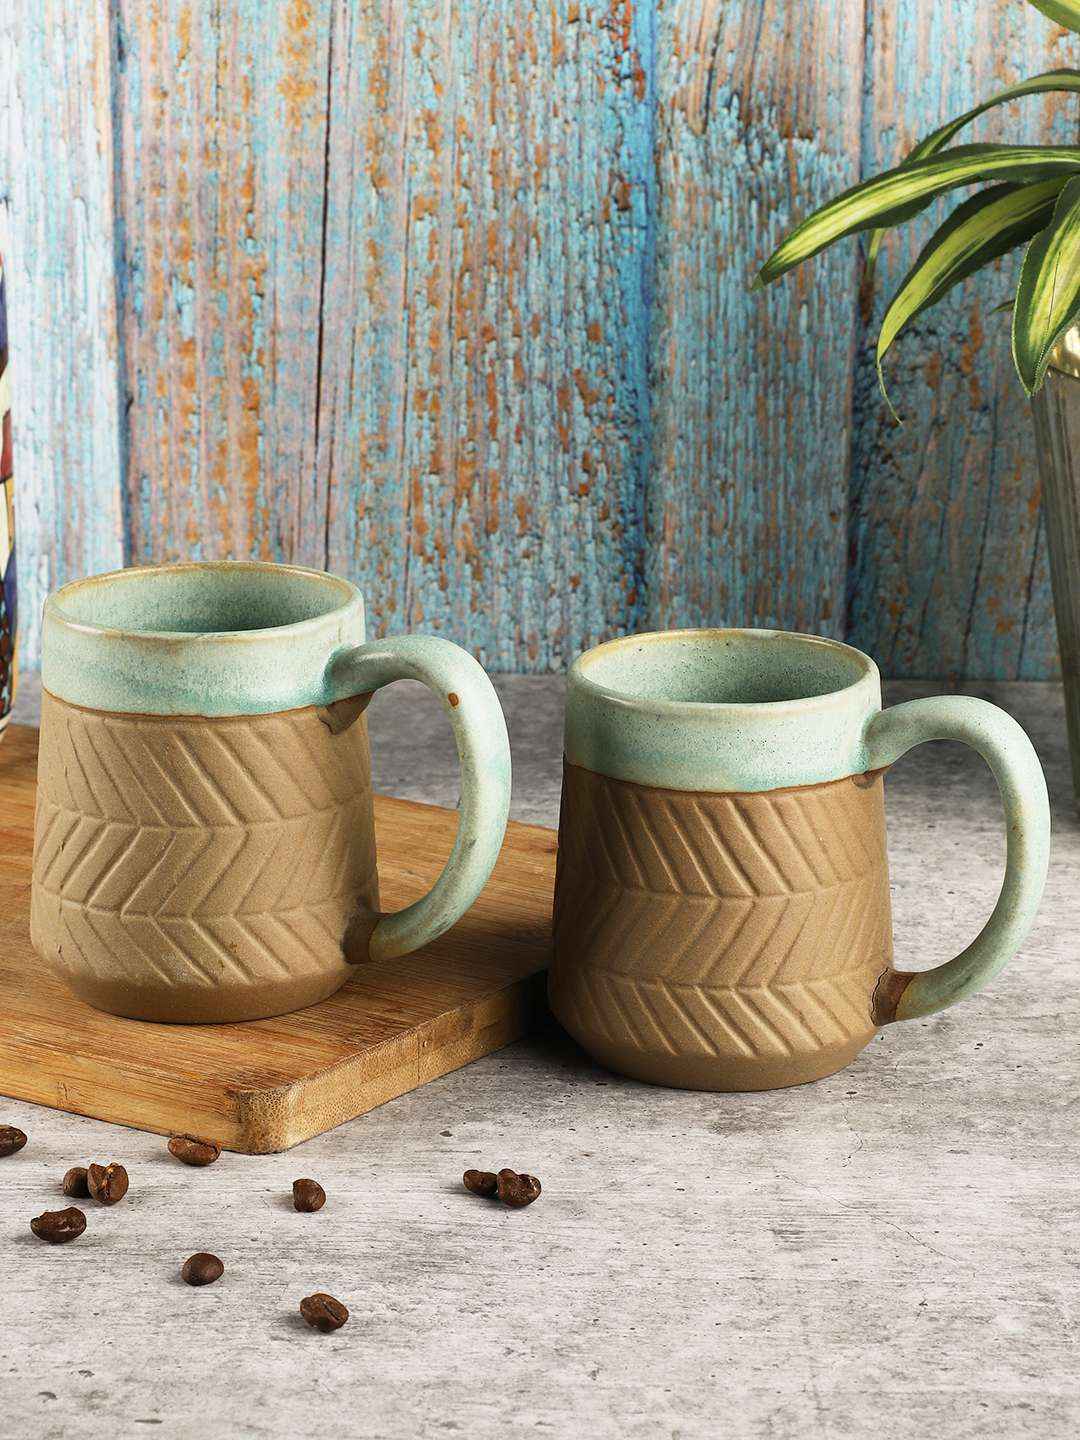 Esmira Golden Polka Dot Ceramic Cup with Golden Handle - Set of 2